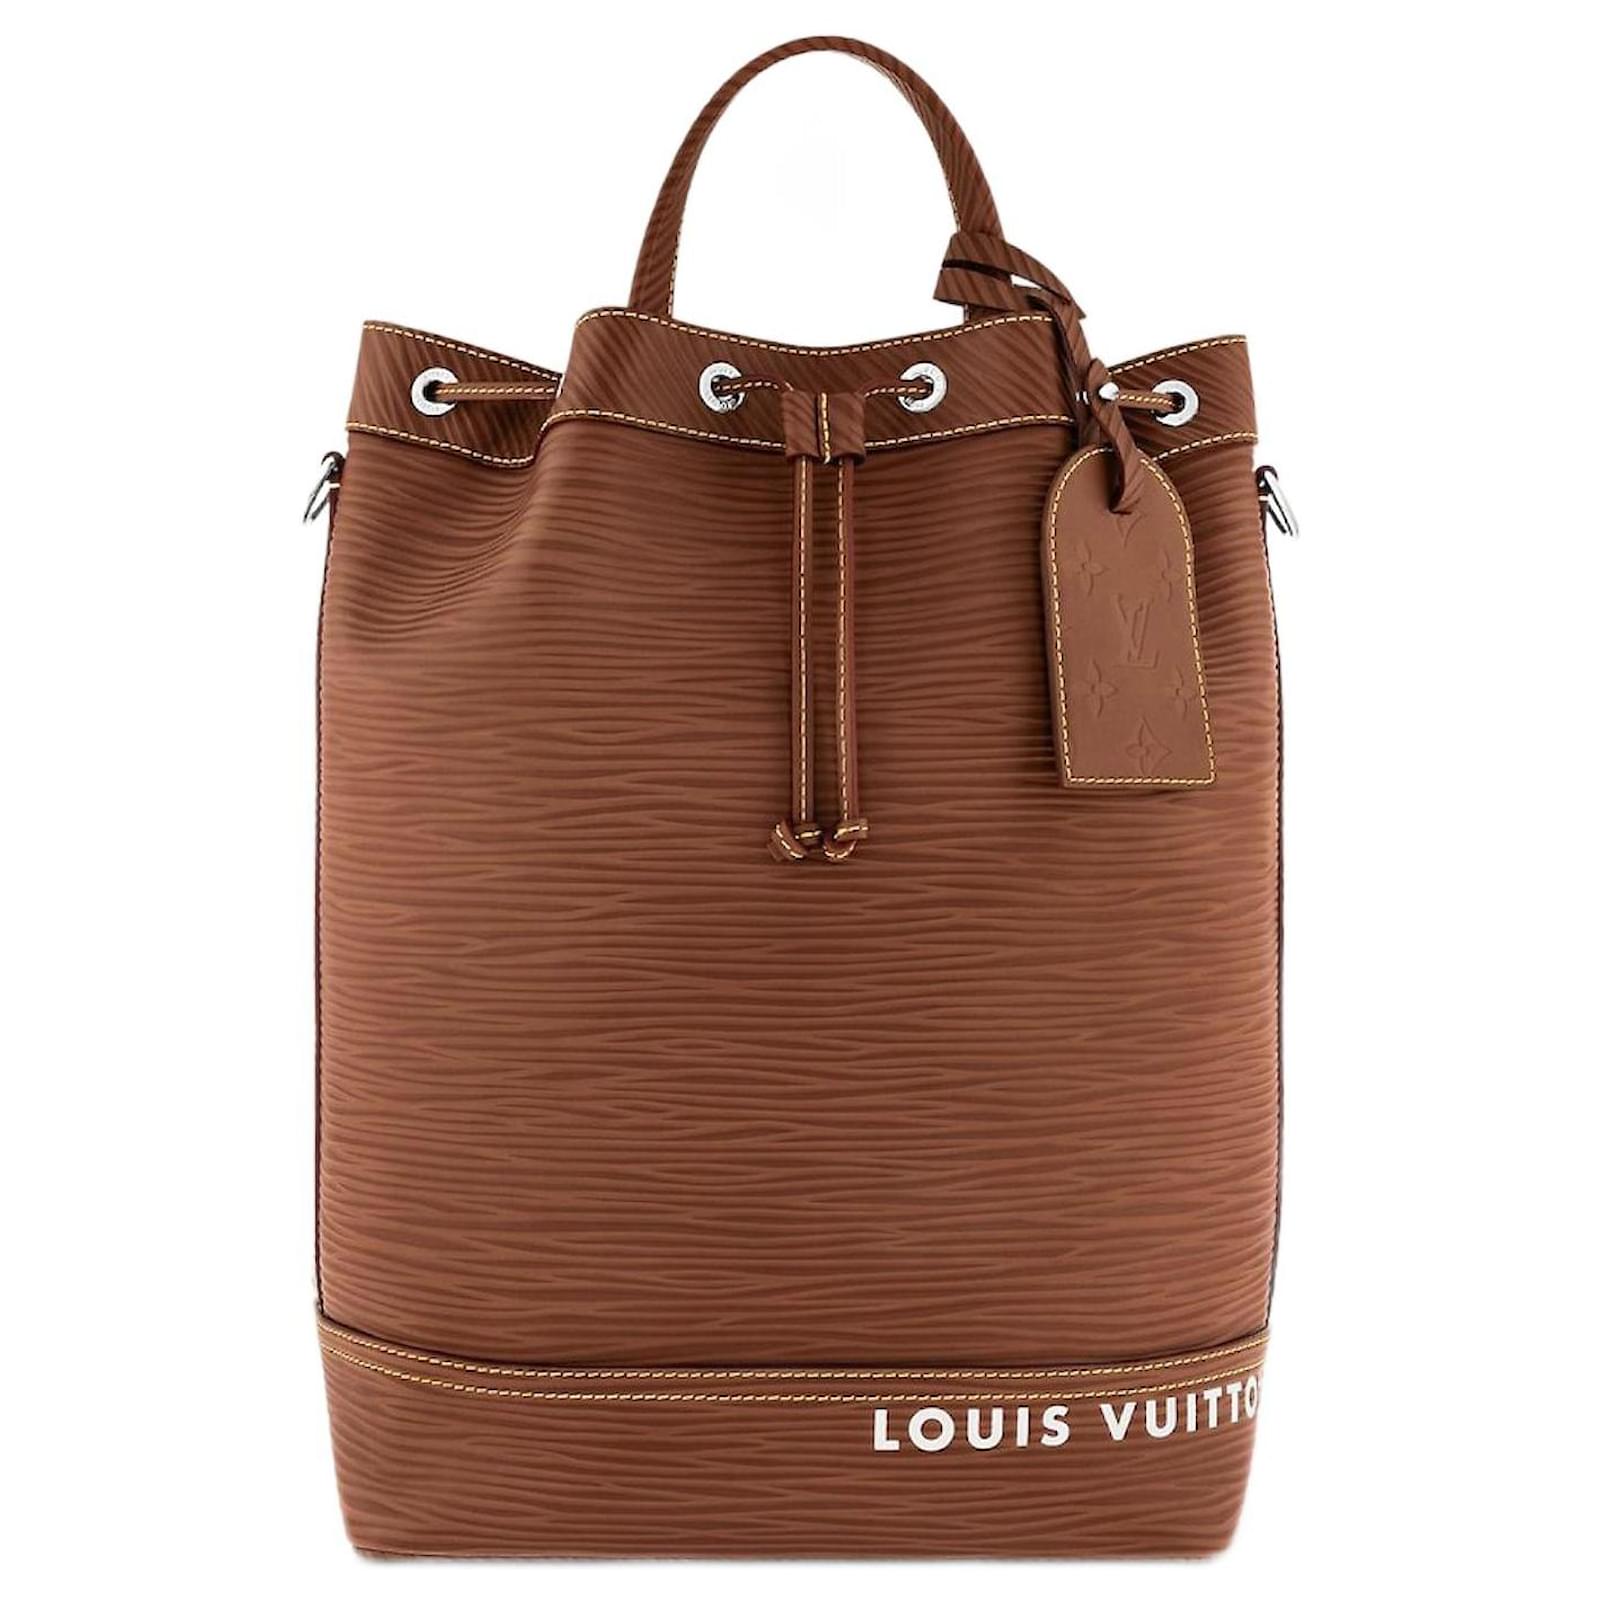 Buy Louis Vuitton Noe Online In India -  India